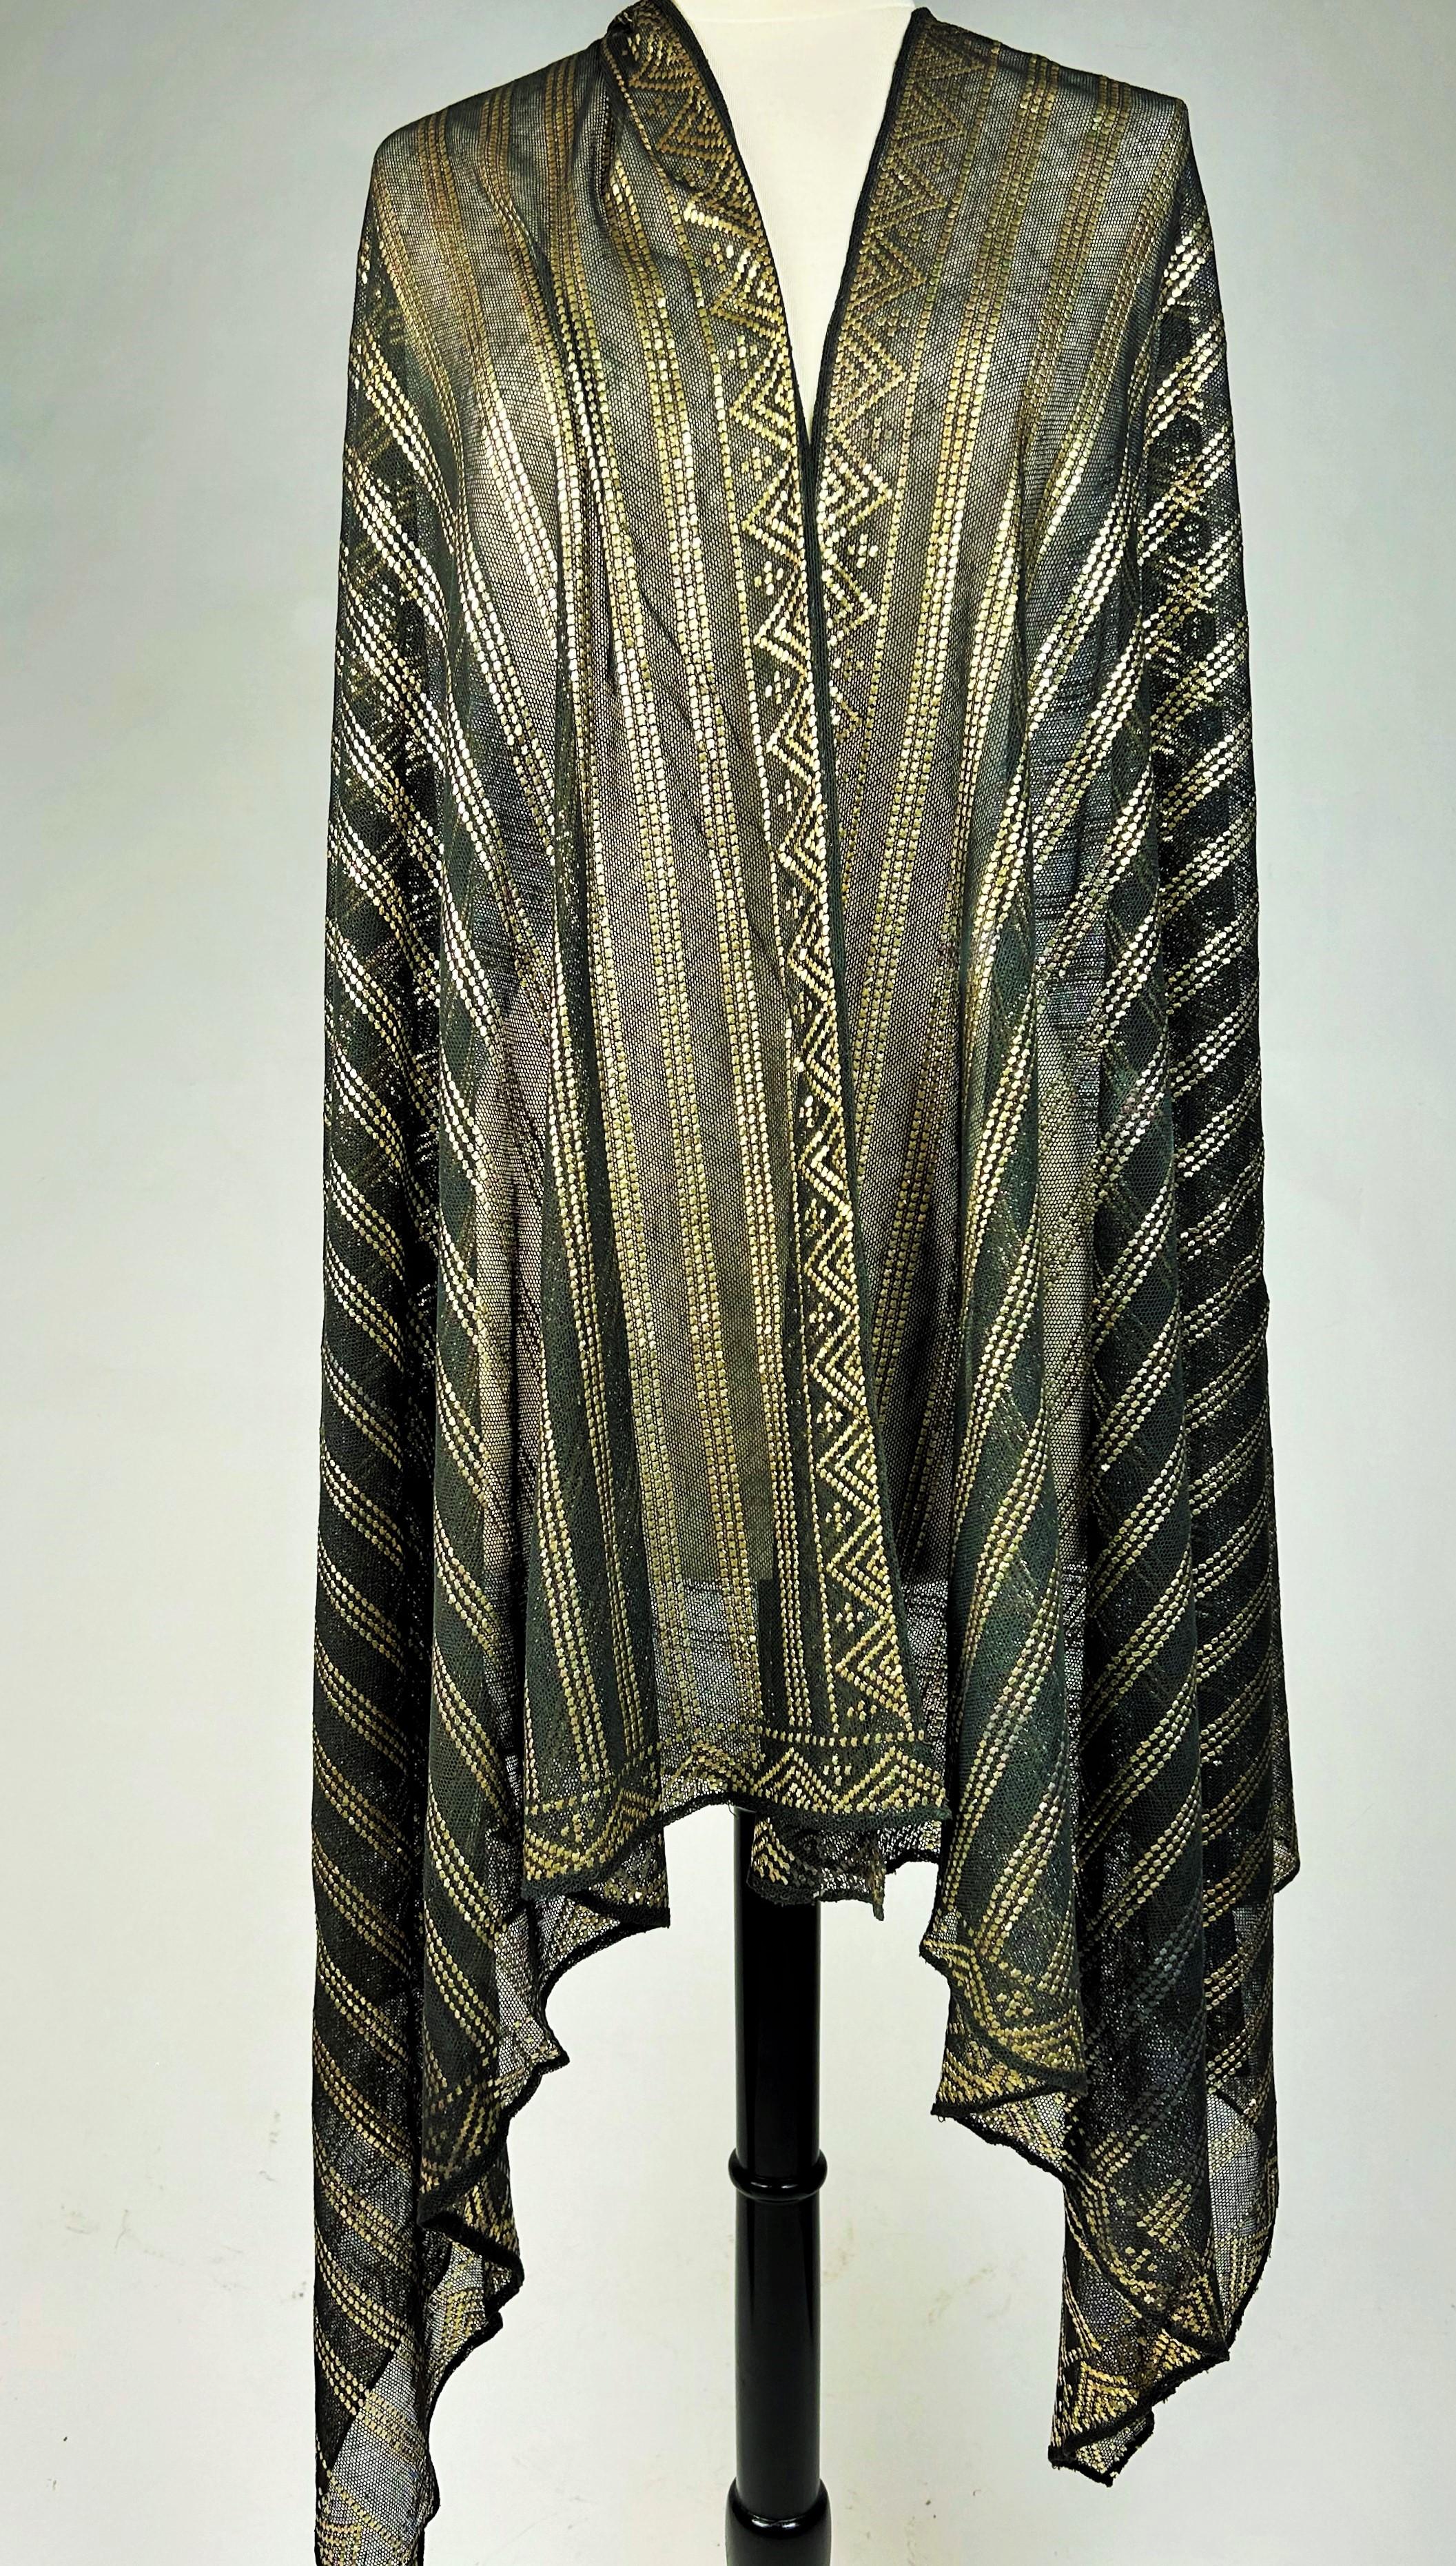 CIRCA 1930-1940

Ägypten

Ein eleganter schwarz-goldener Schal oder eine Stola aus der Zeit des Art déco, bekannt als Assuit-Schal, der in Ägypten in den 1920er bis 1940er Jahren für die westliche Mode hergestellt wurde. Die Ägyptomanie begann in